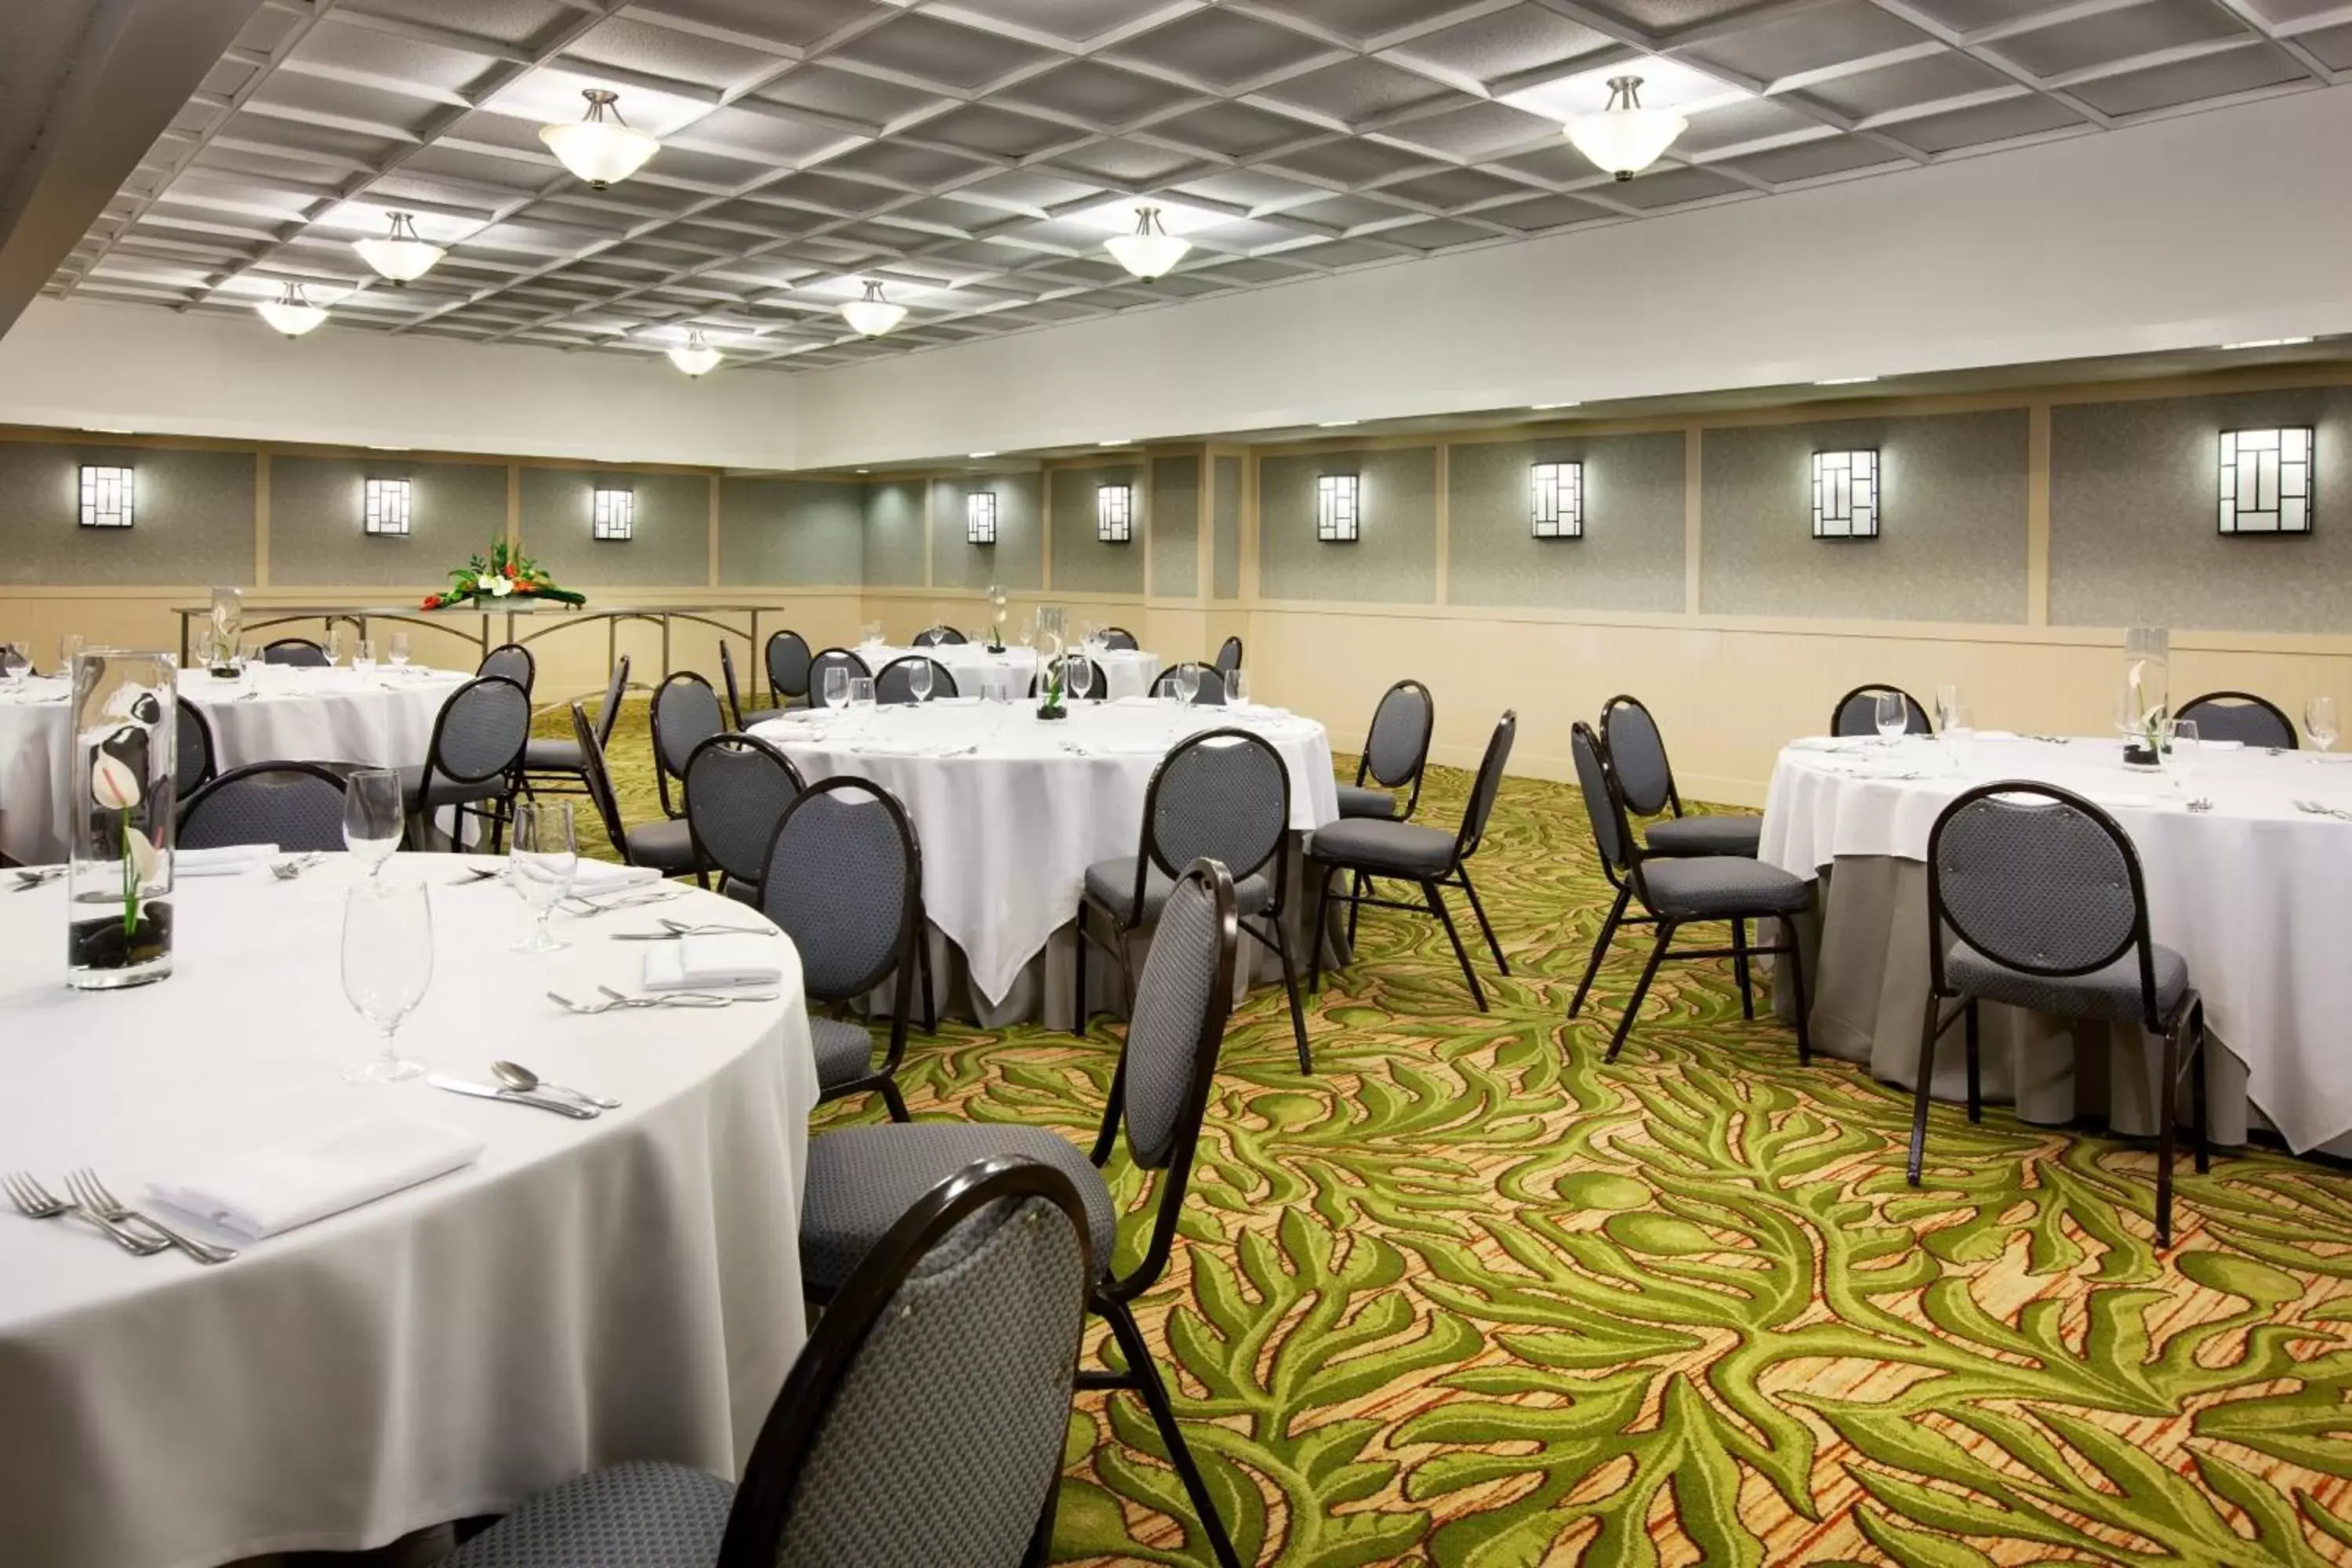 Meeting/conference room, Banquet Facilities in Sheraton Princess Kaiulani